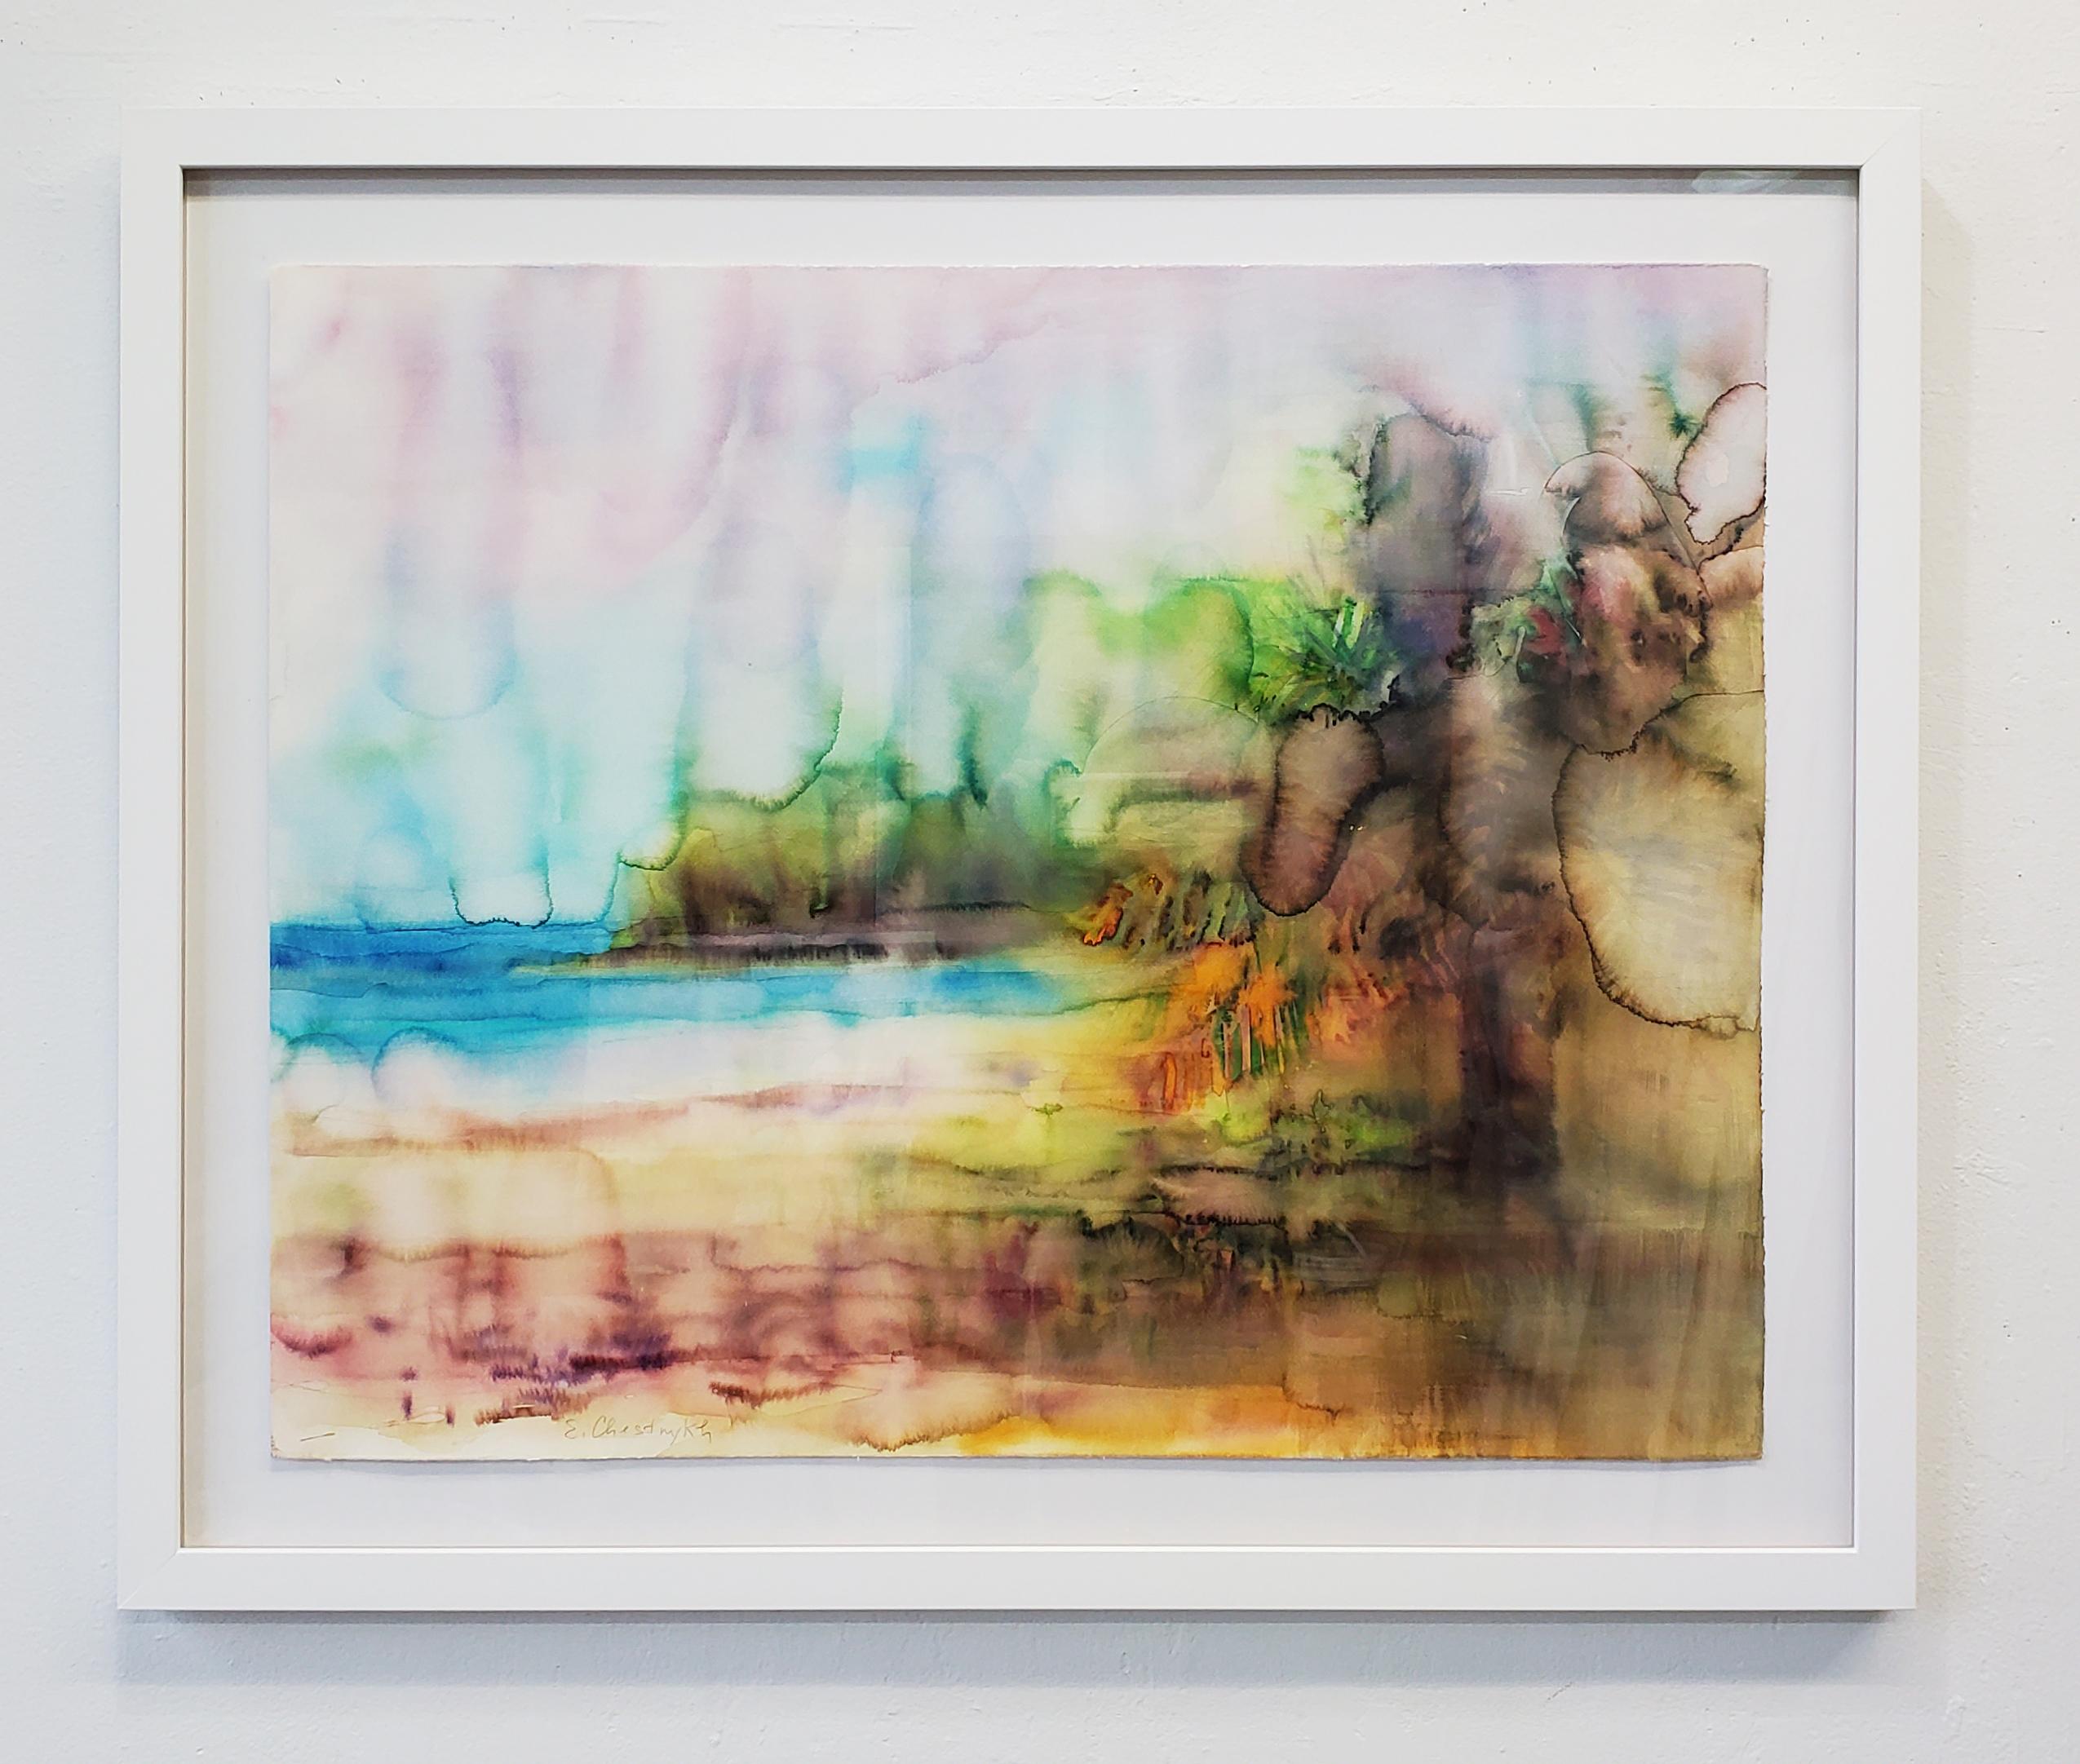 Peinture « Rainy Day on the Beach », aquarelle sur papier, plage, tropicale, encadrée - Art de  Elena Chestnykh